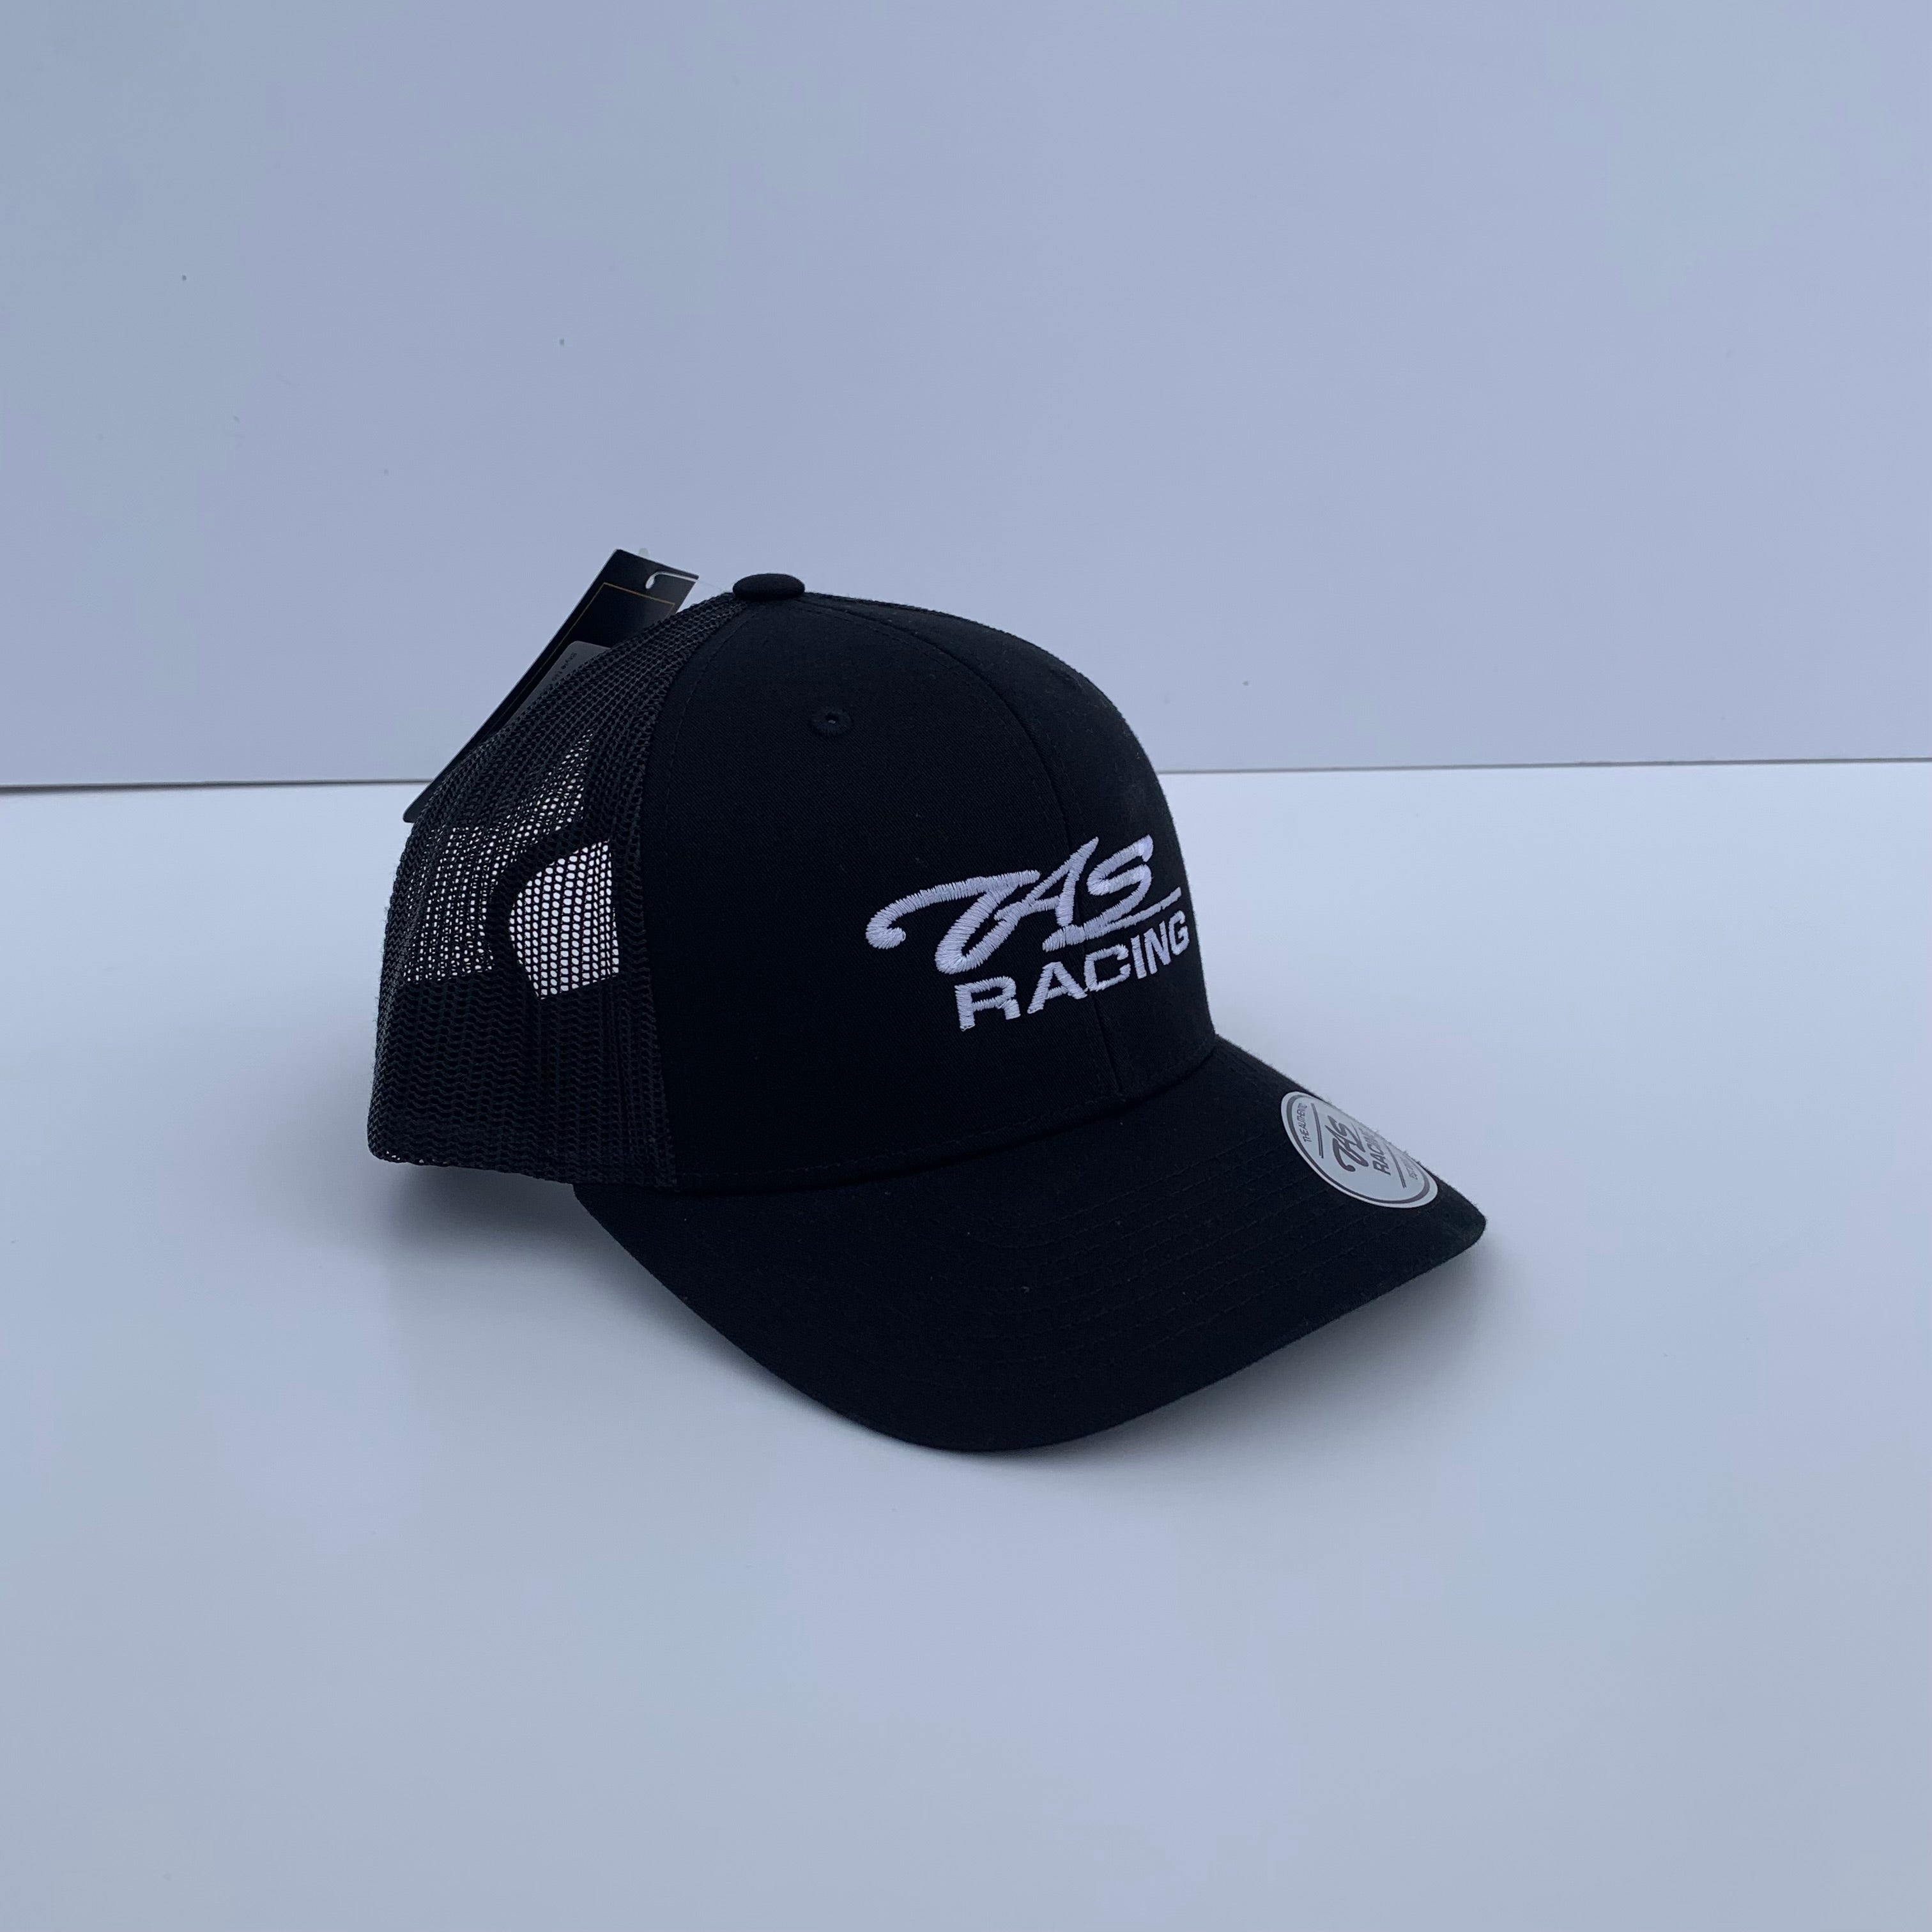 Black TAS Racing trucker cap